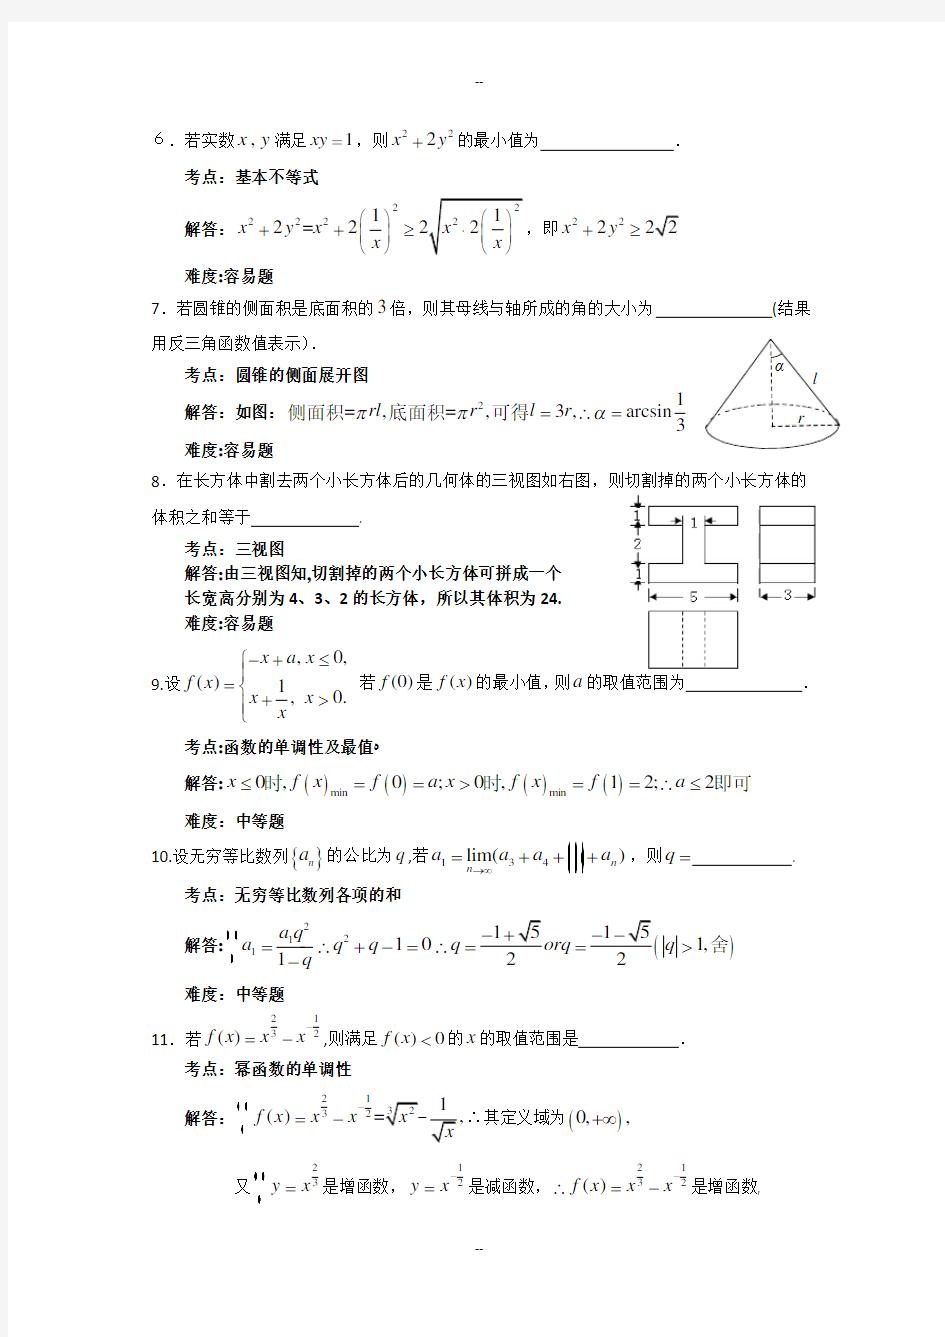 上海高考文科数学试题详解